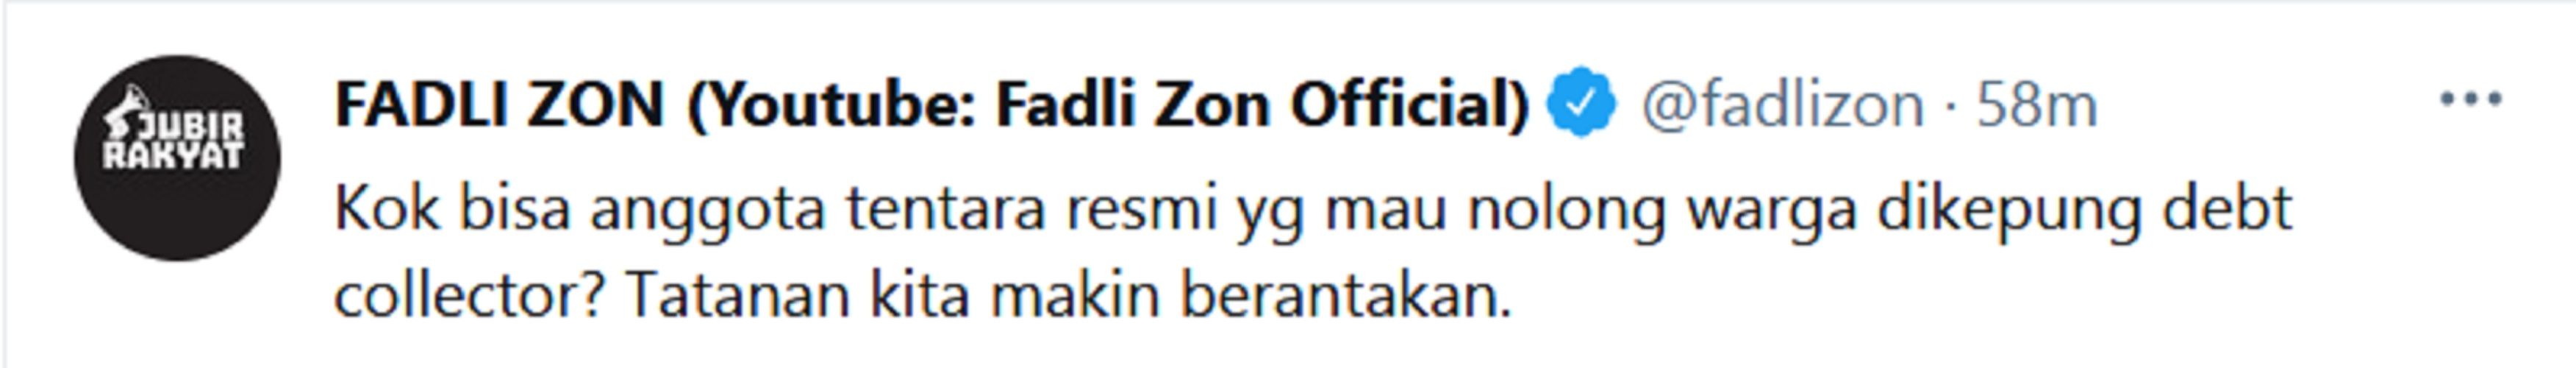 Soal Anggota TNI Dikeroyok Debt Collector, Fadli Zon: Tatanan Negara Berantakan